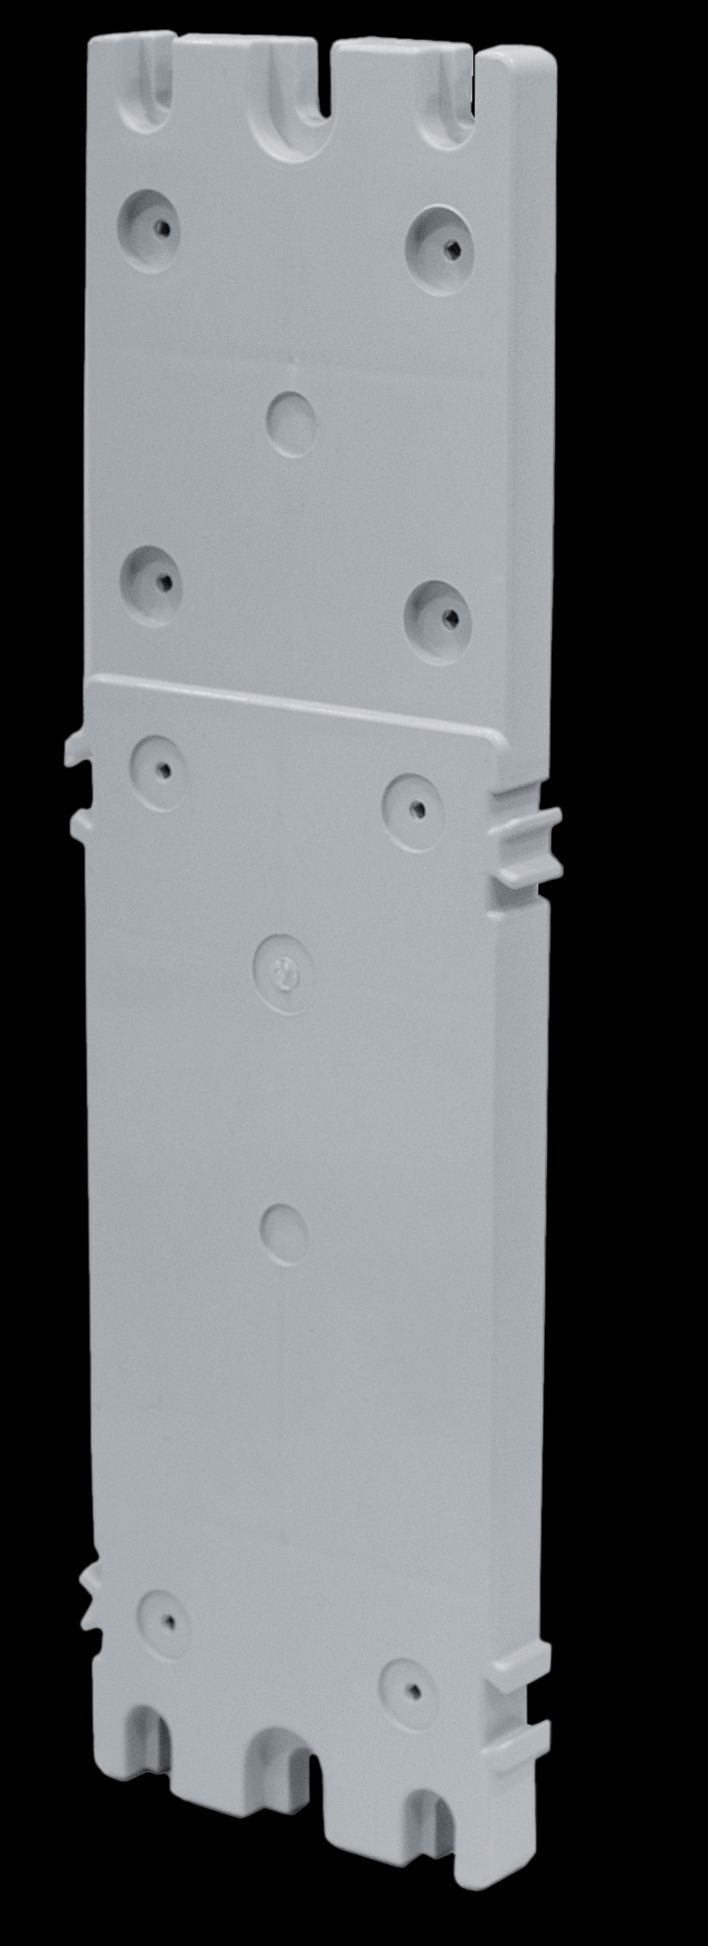 Placa modular para tomas de corriente interblocantes